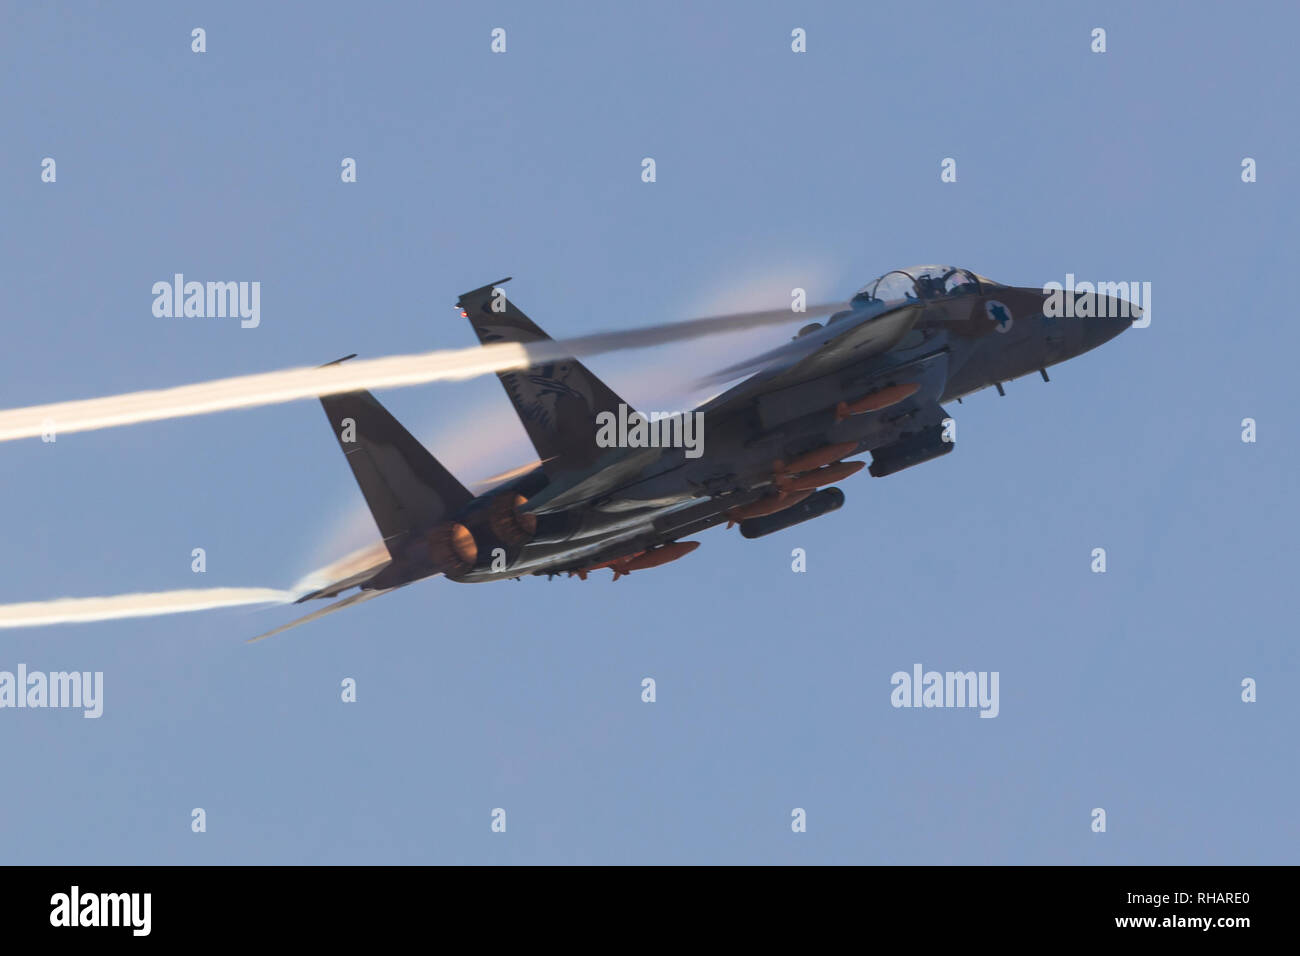 La fuerza aérea israelí F-35 Stealth Fighter jet volando durante un airshow en Hatzerim, cerca de Beer Sheva Israel Foto de stock